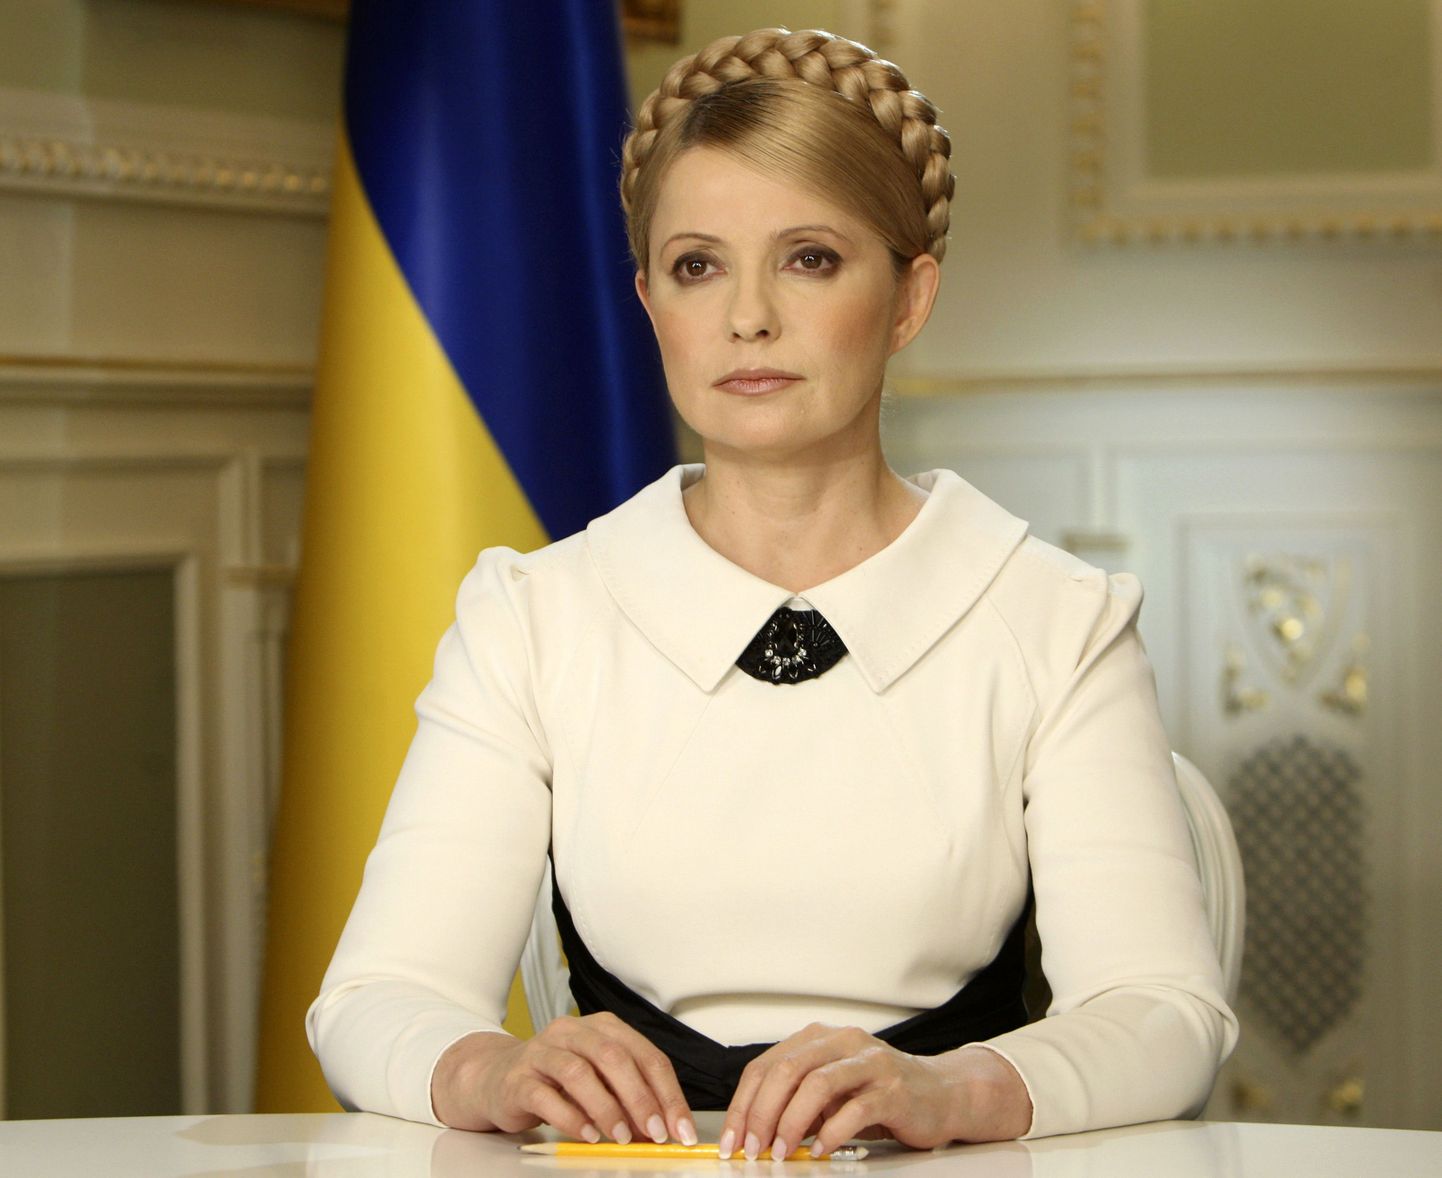 Ukraina peaminister ja presidendiks kandideerinud Julija Tõmošenko pöördus televisiooni vahendusel rahva poole ja lubas valimiste tulemused kohtus vaidlustada.